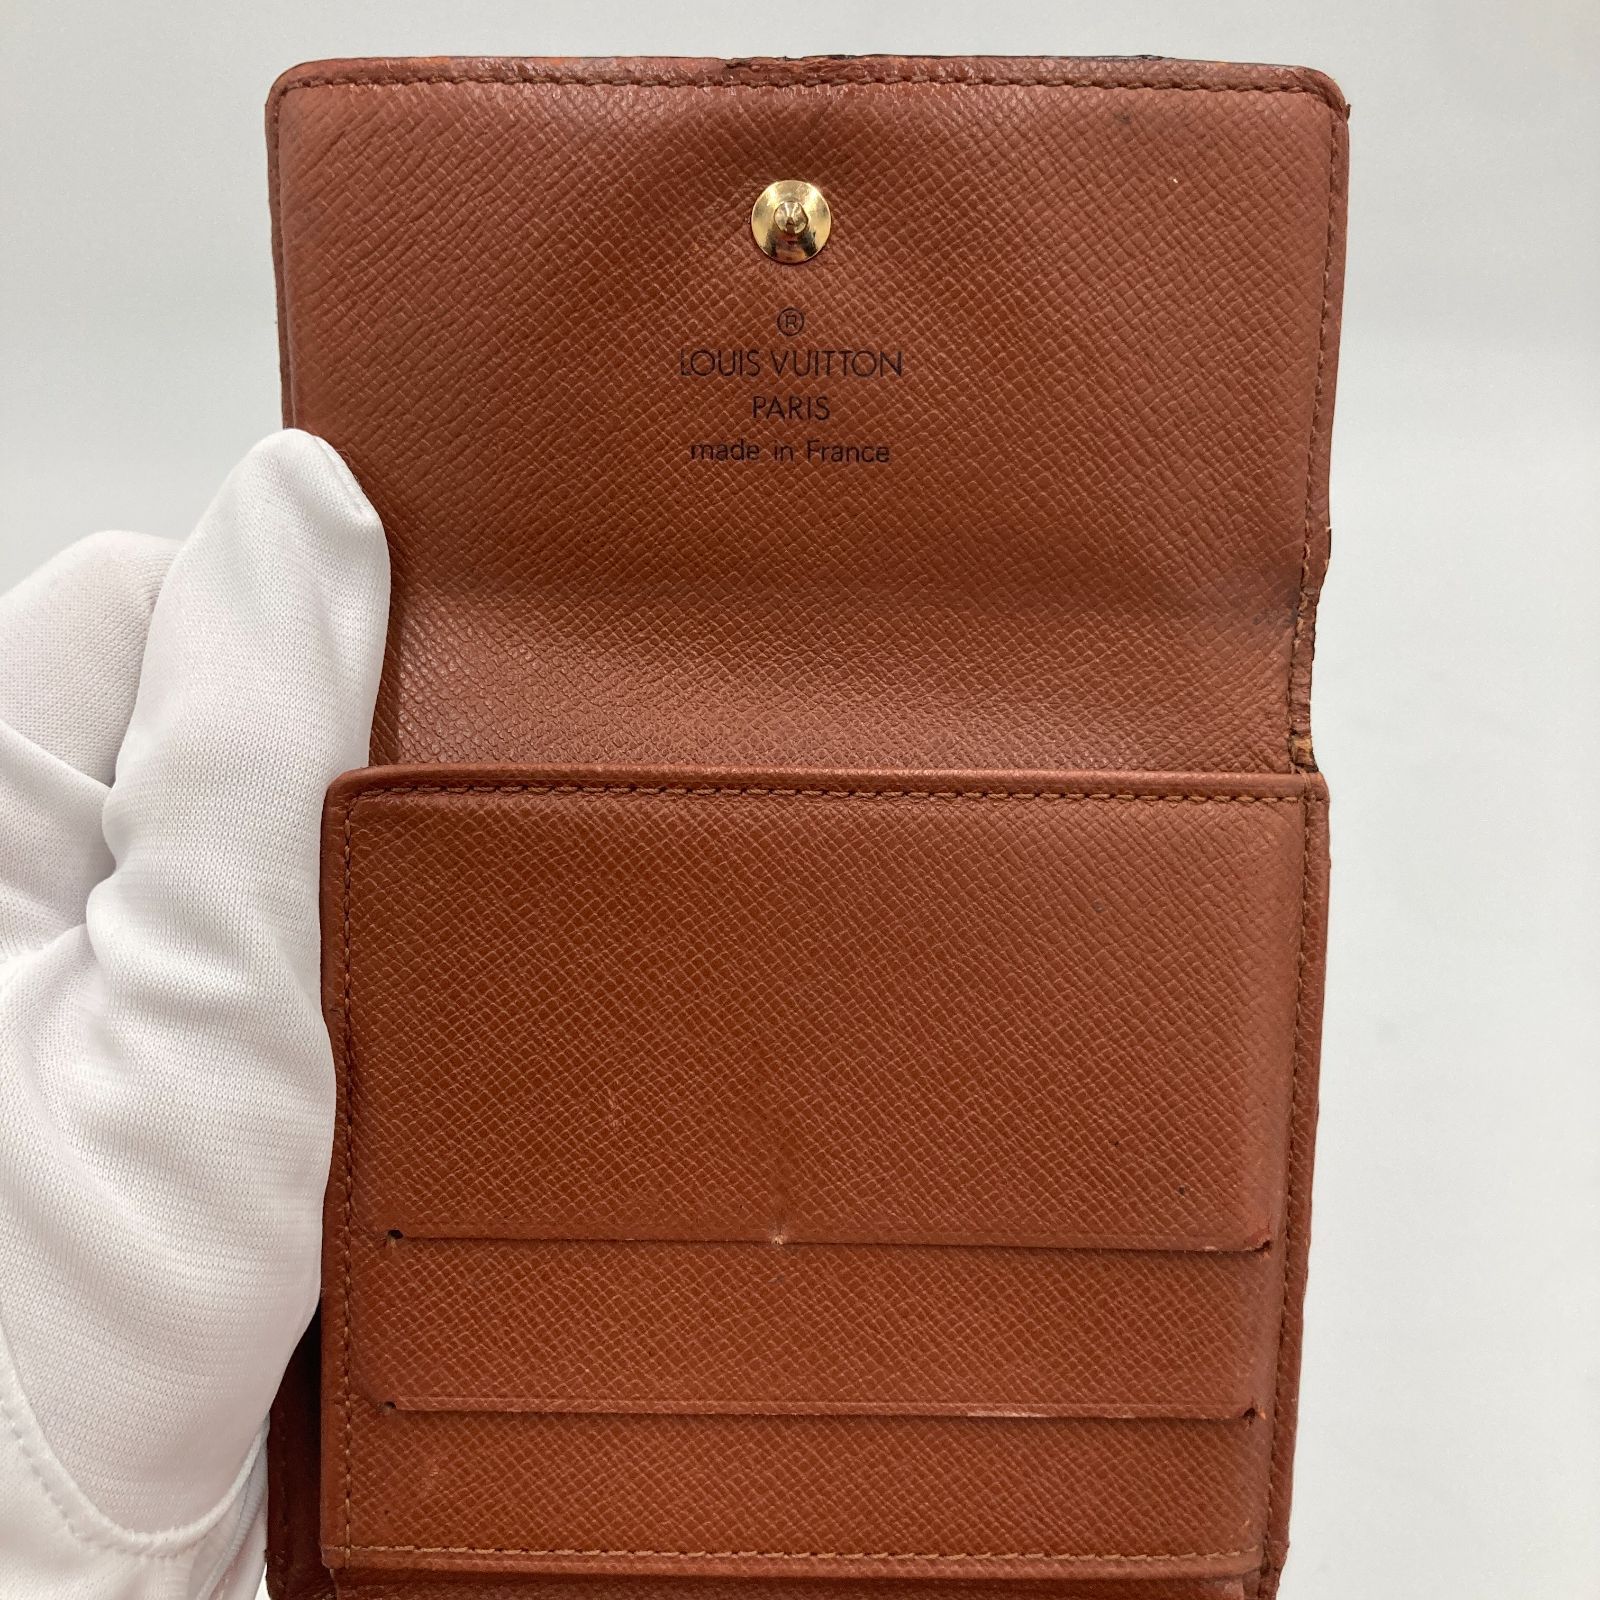 Louis Vuitton 財布ルイ・ヴィトン モノグラム 折財布 Wホック財布 